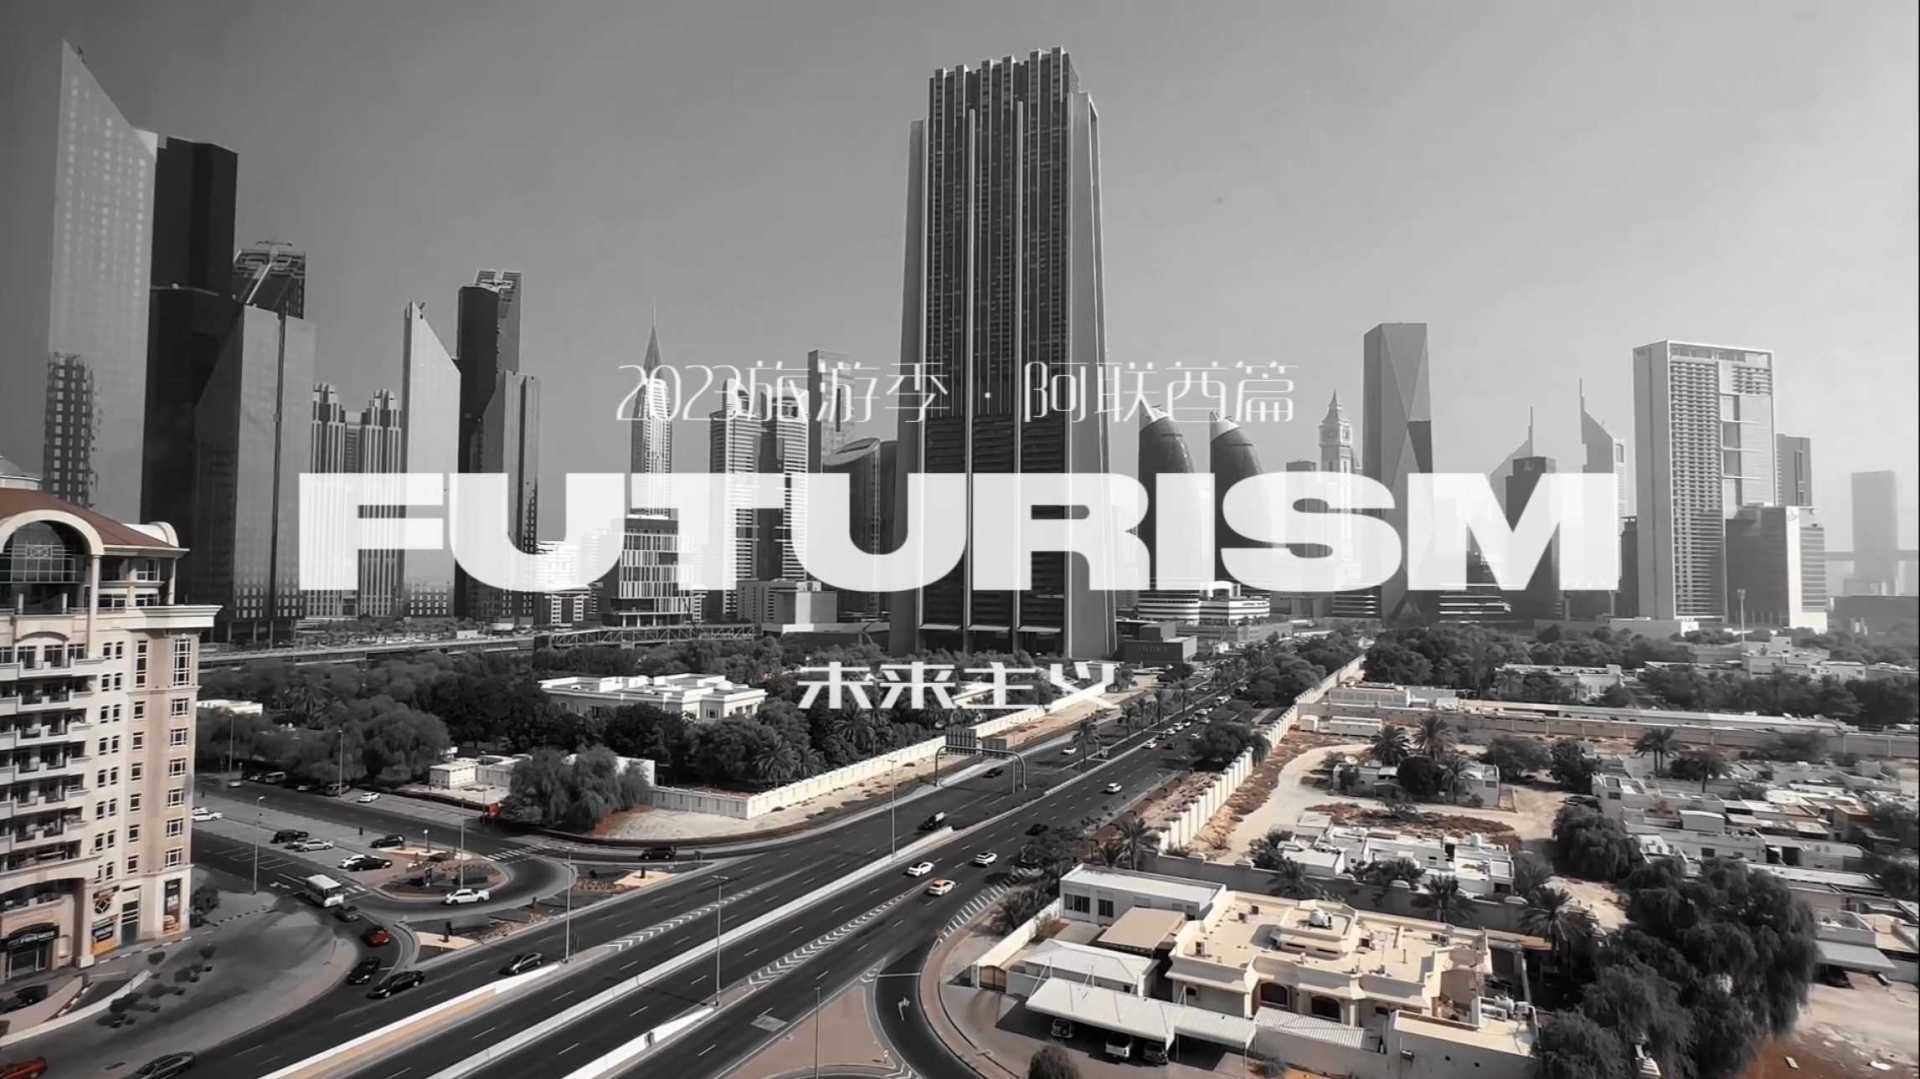 2023旅游季 · 阿联酋篇 第4️⃣集《Futurism 未来主义》